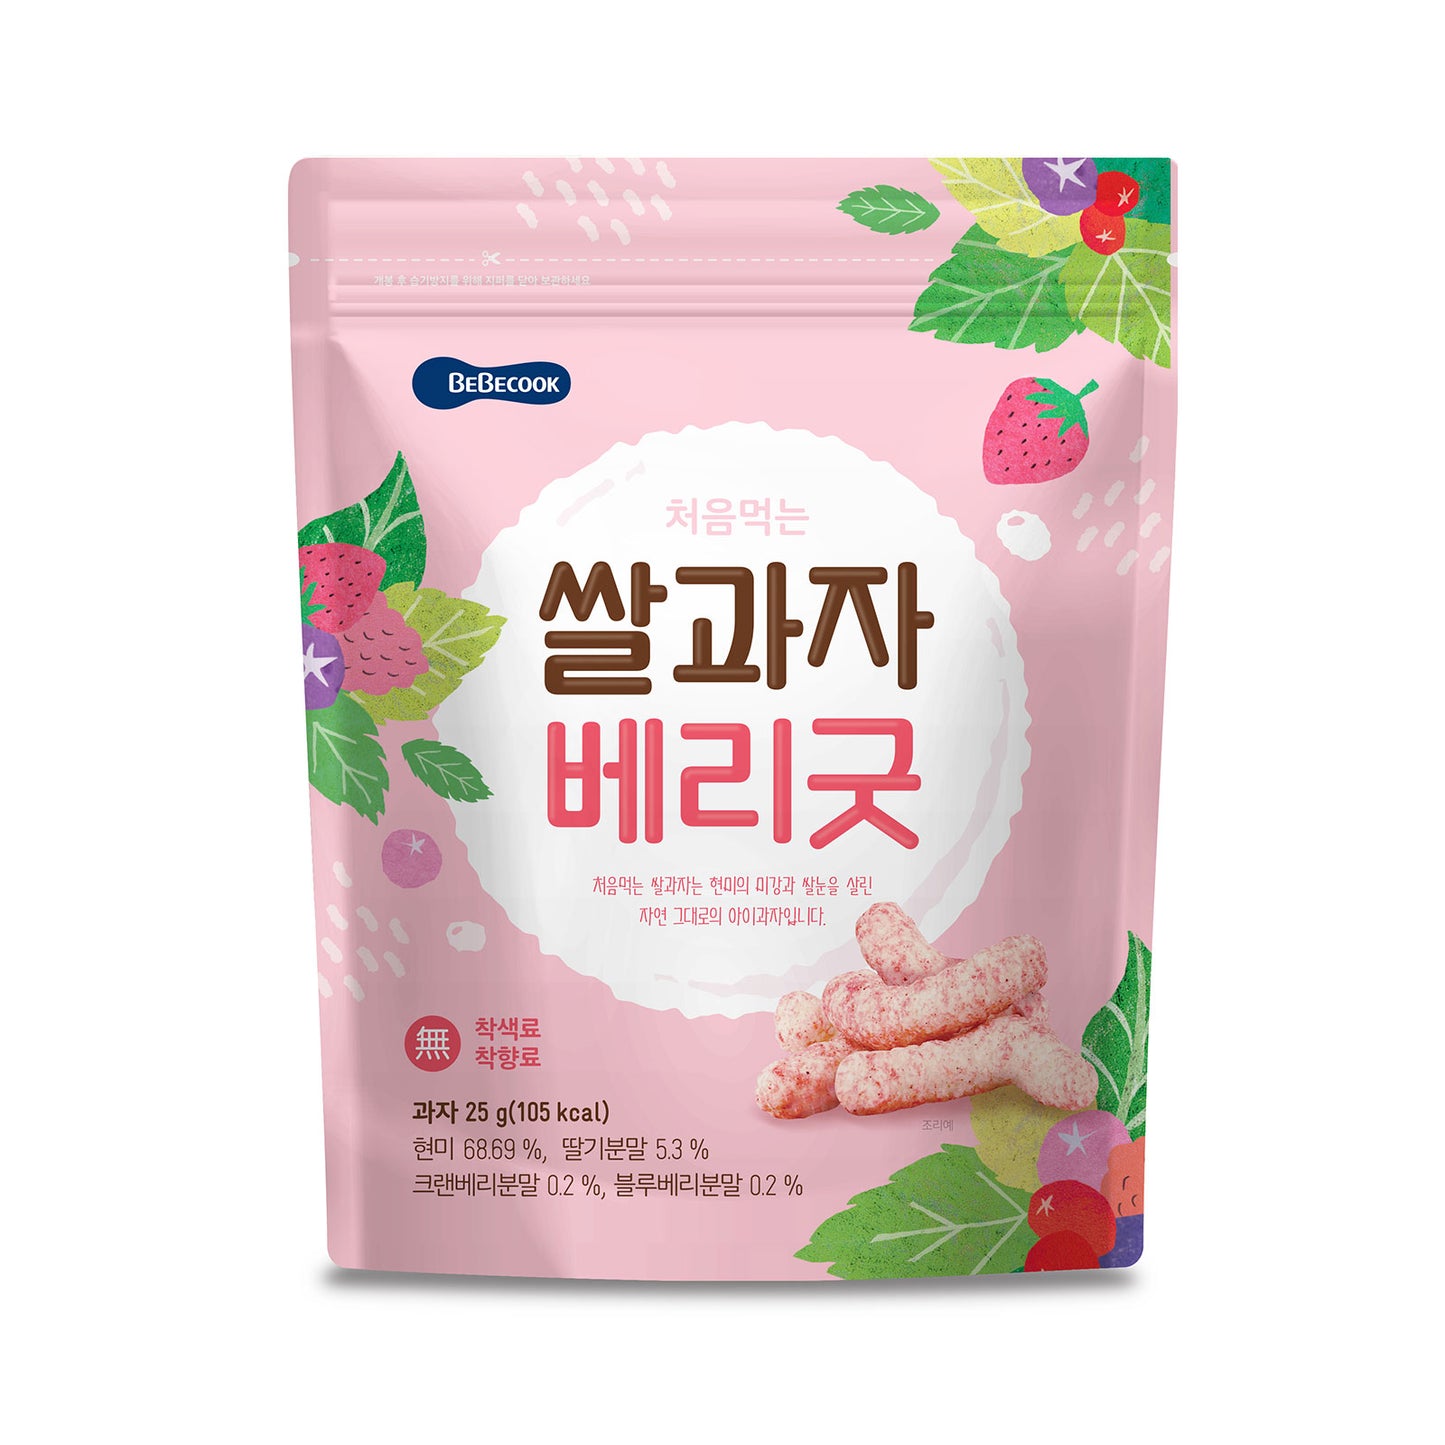 BeBecook - Wise Moms Rice Snacks (Berries) 25g